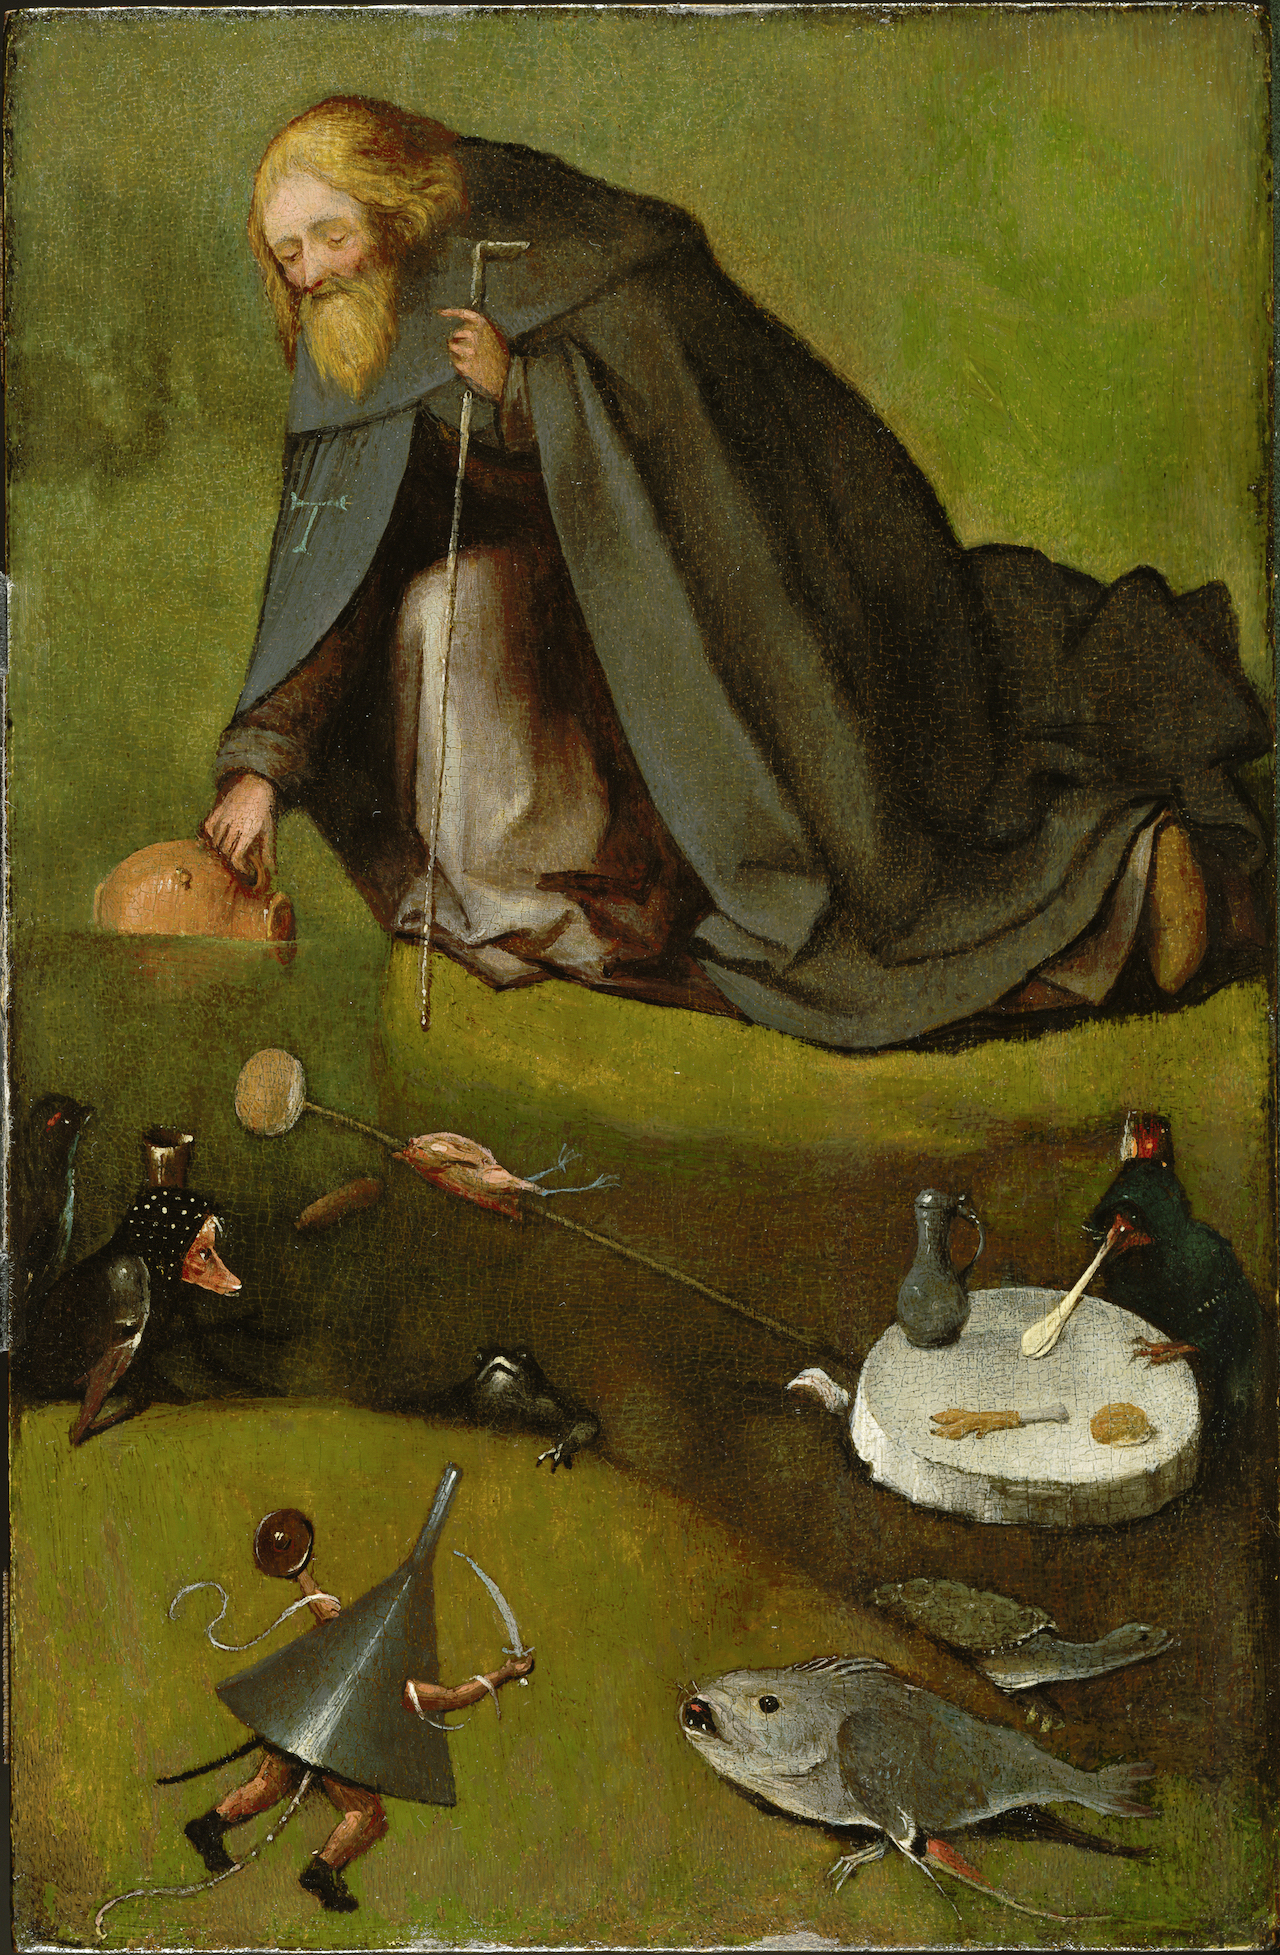 La Tentazione di Sant'Antonio by Hieronymus Bosch - 1500-1510 - 38,58 × 25,4 cm 